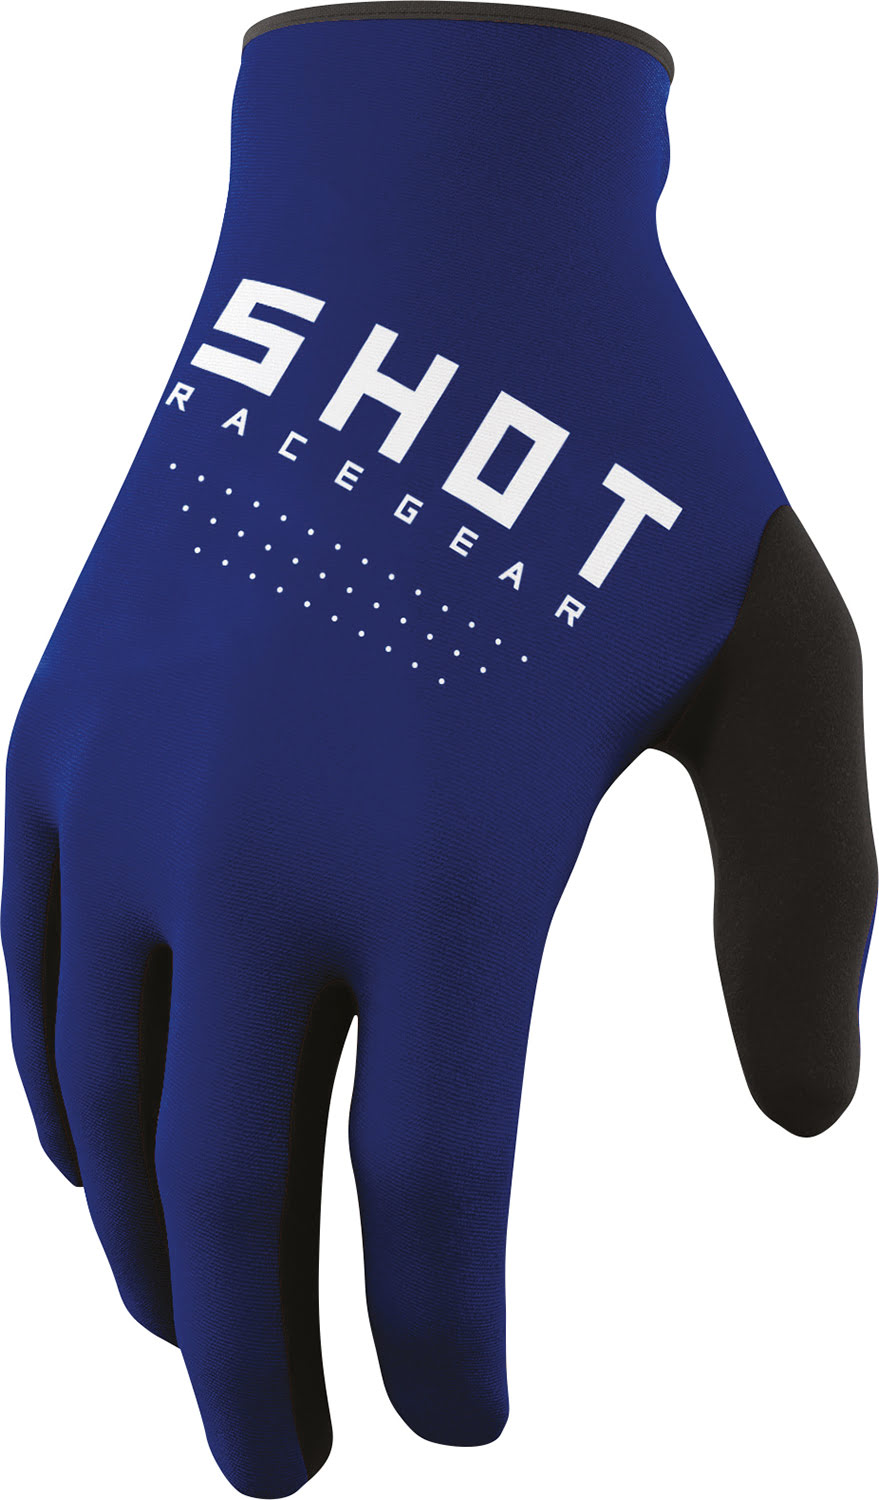 Gloves DRAW Blue SHOT 